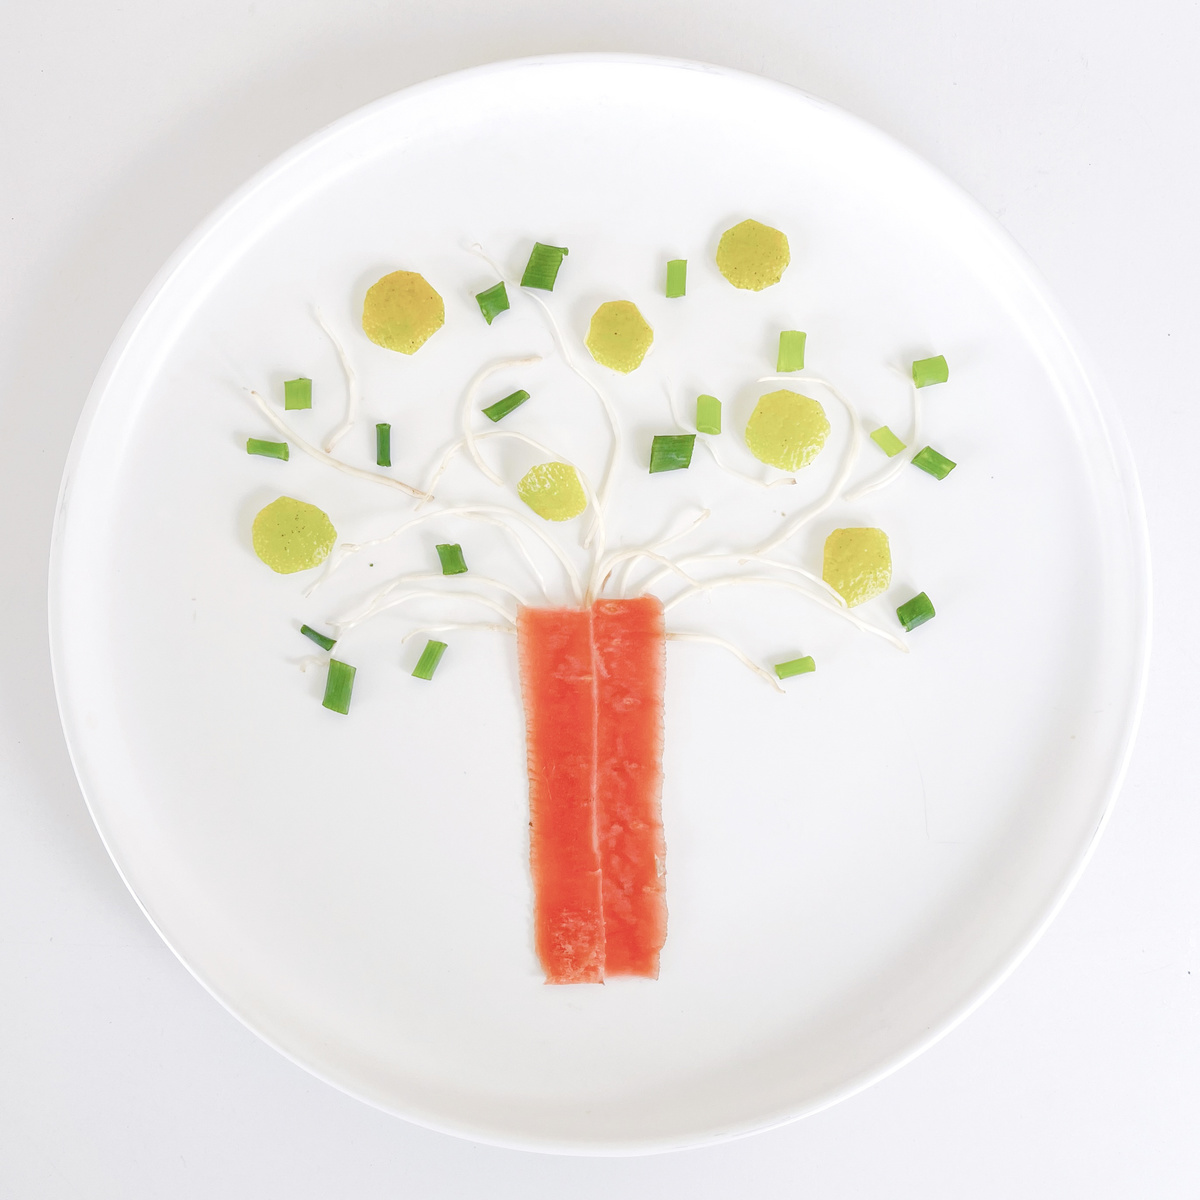 一块带有食物的树形图案的白盘子